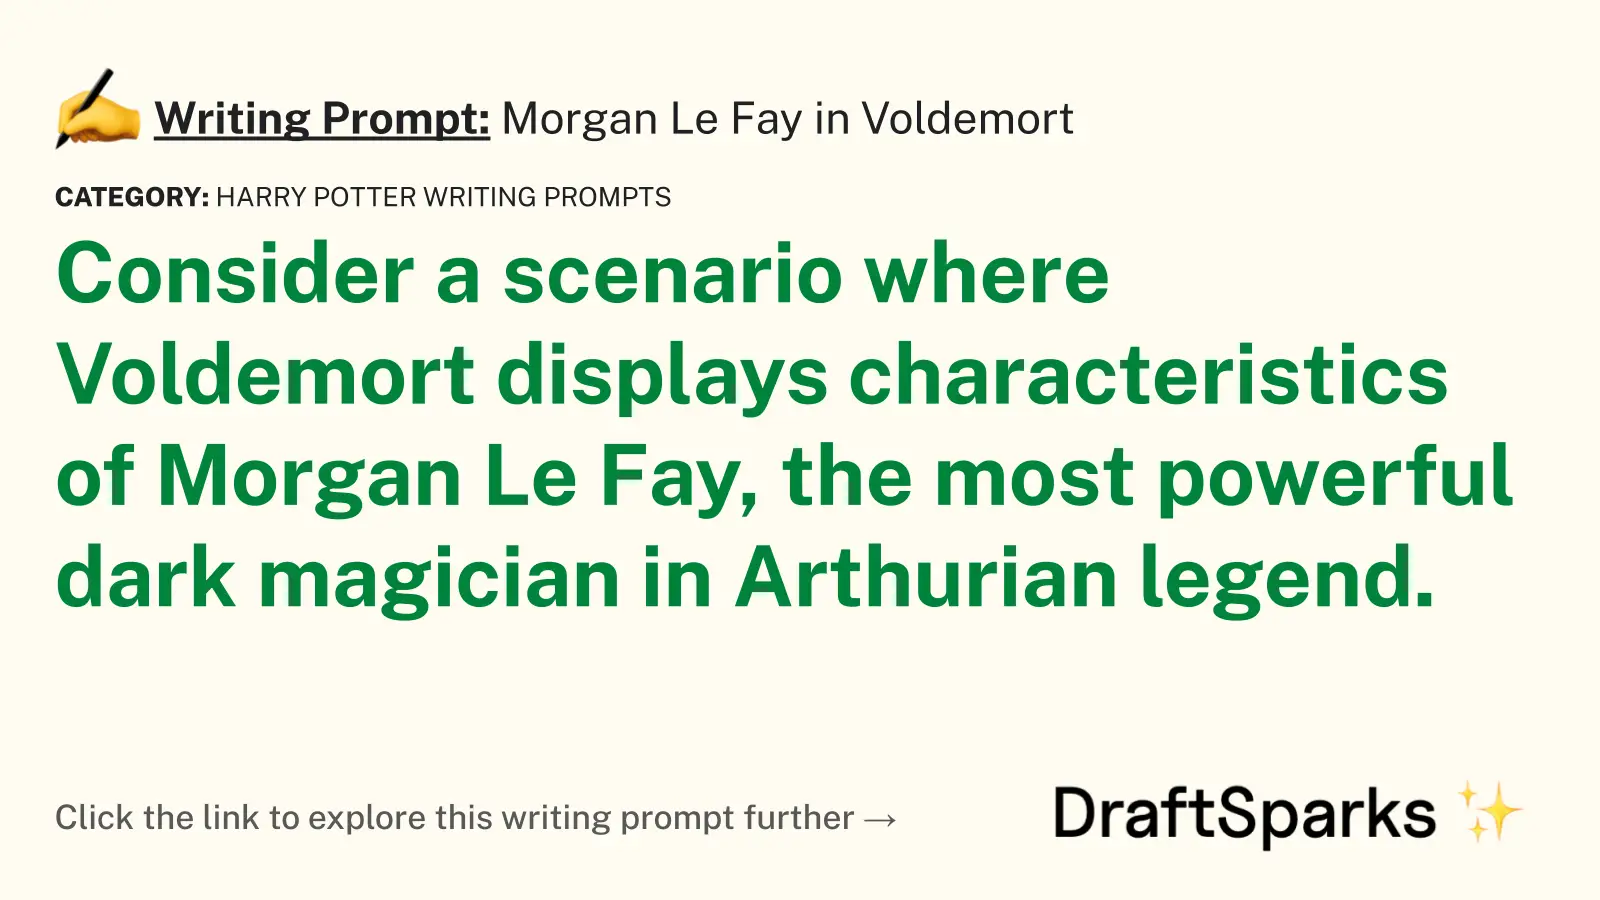 Morgan Le Fay in Voldemort